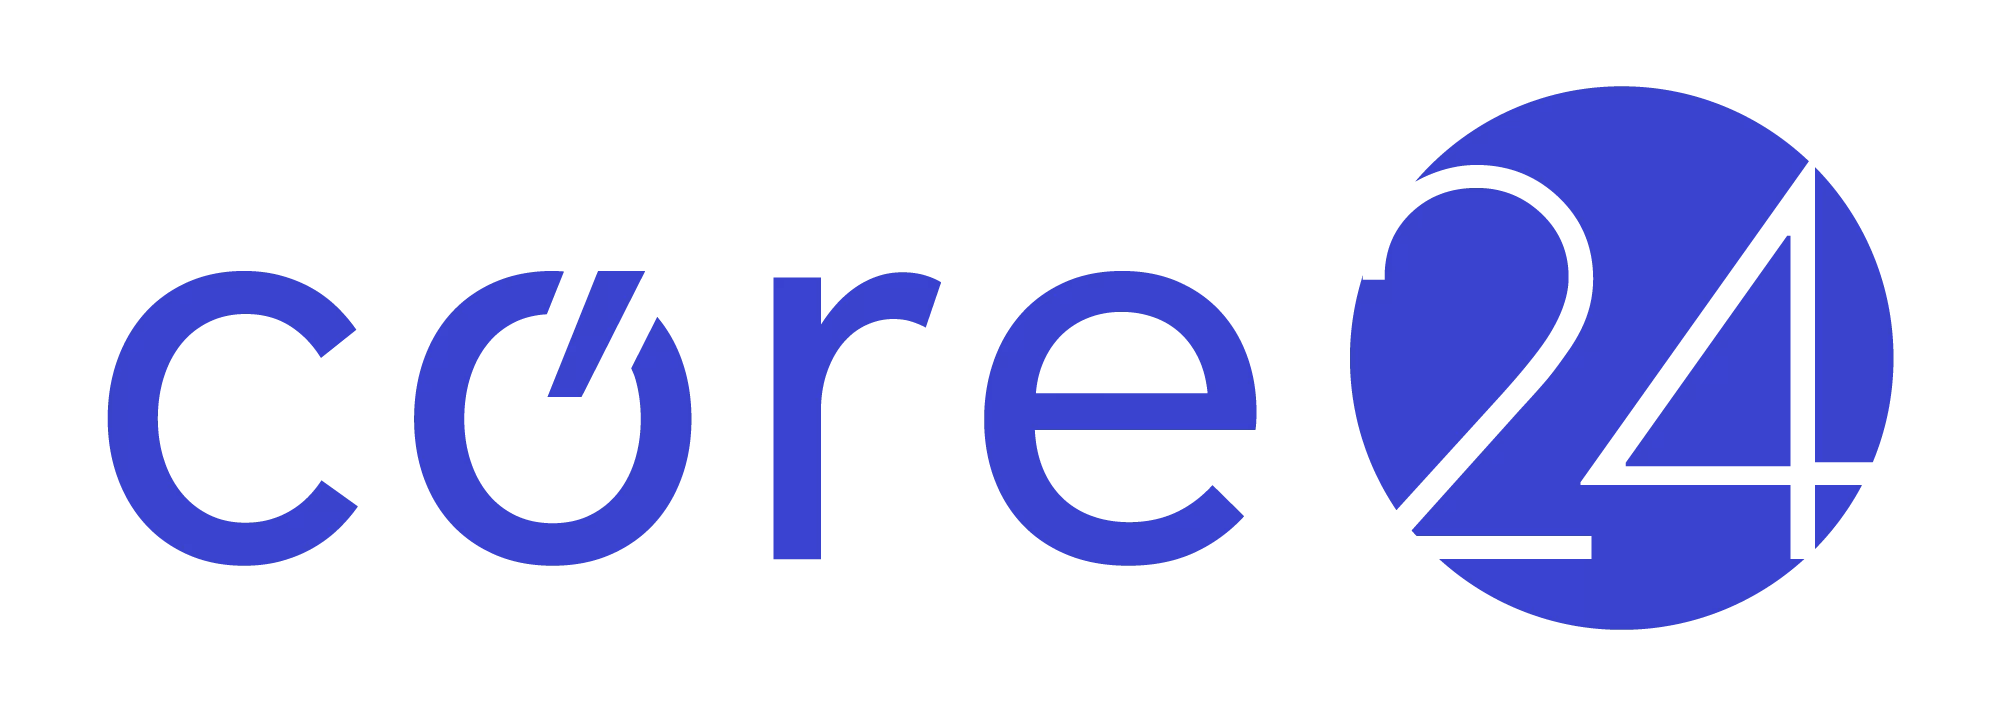 03 core24 logo ib web